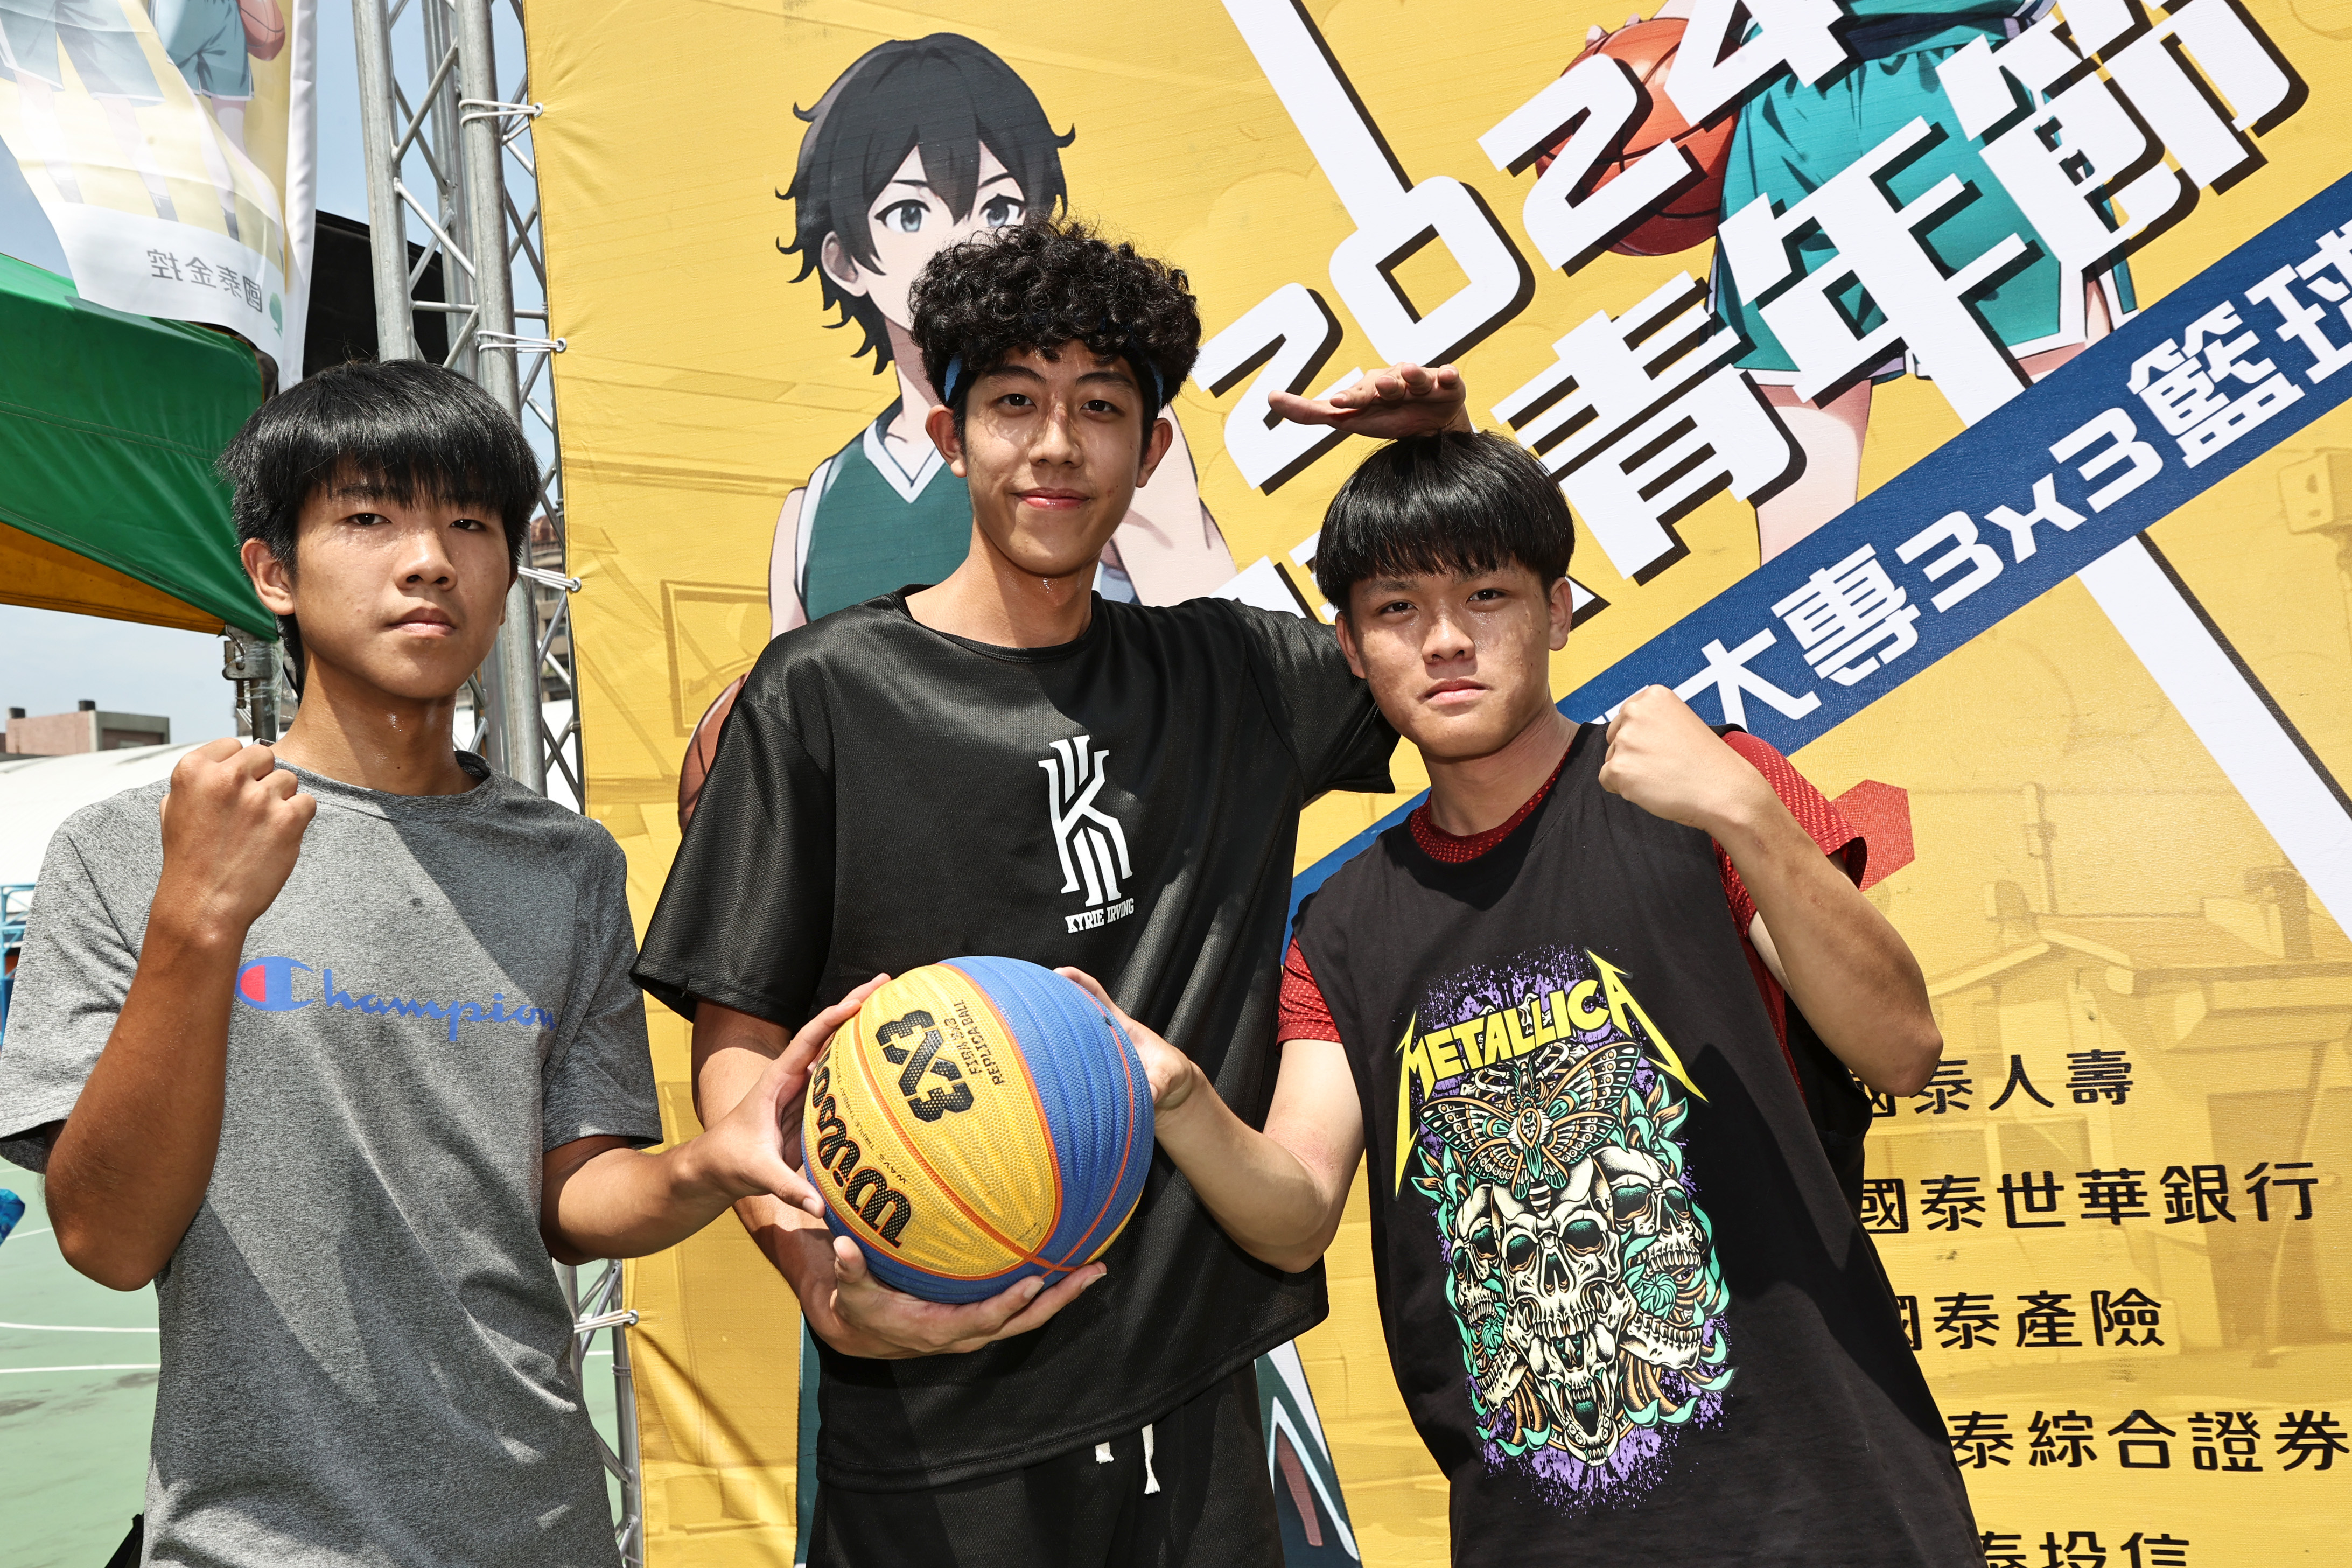 国泰青年节3X3篮球赛，许多跨校组合展现对篮球的热爱。图/国泰金控提供